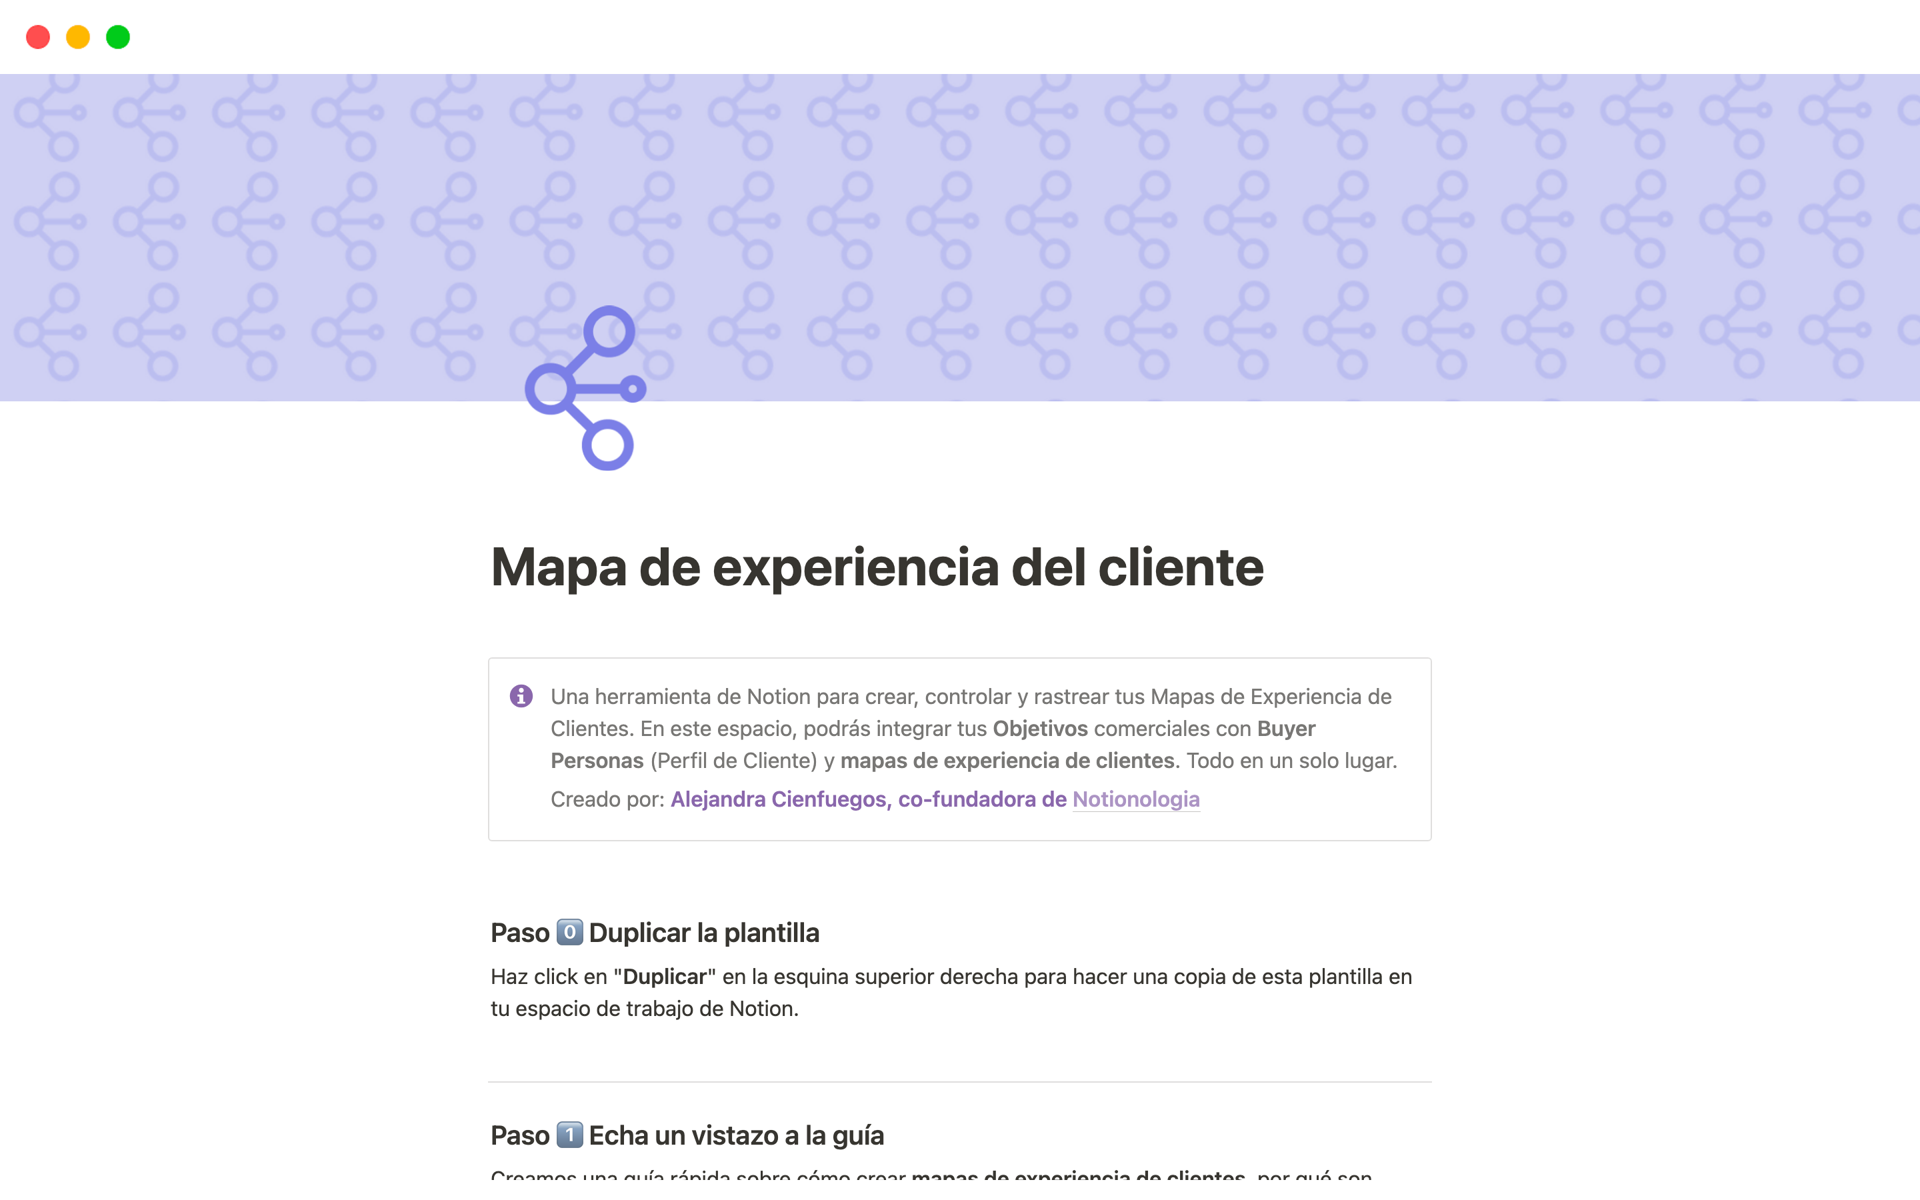 Uma prévia do modelo para Mapa de experiencia del cliente